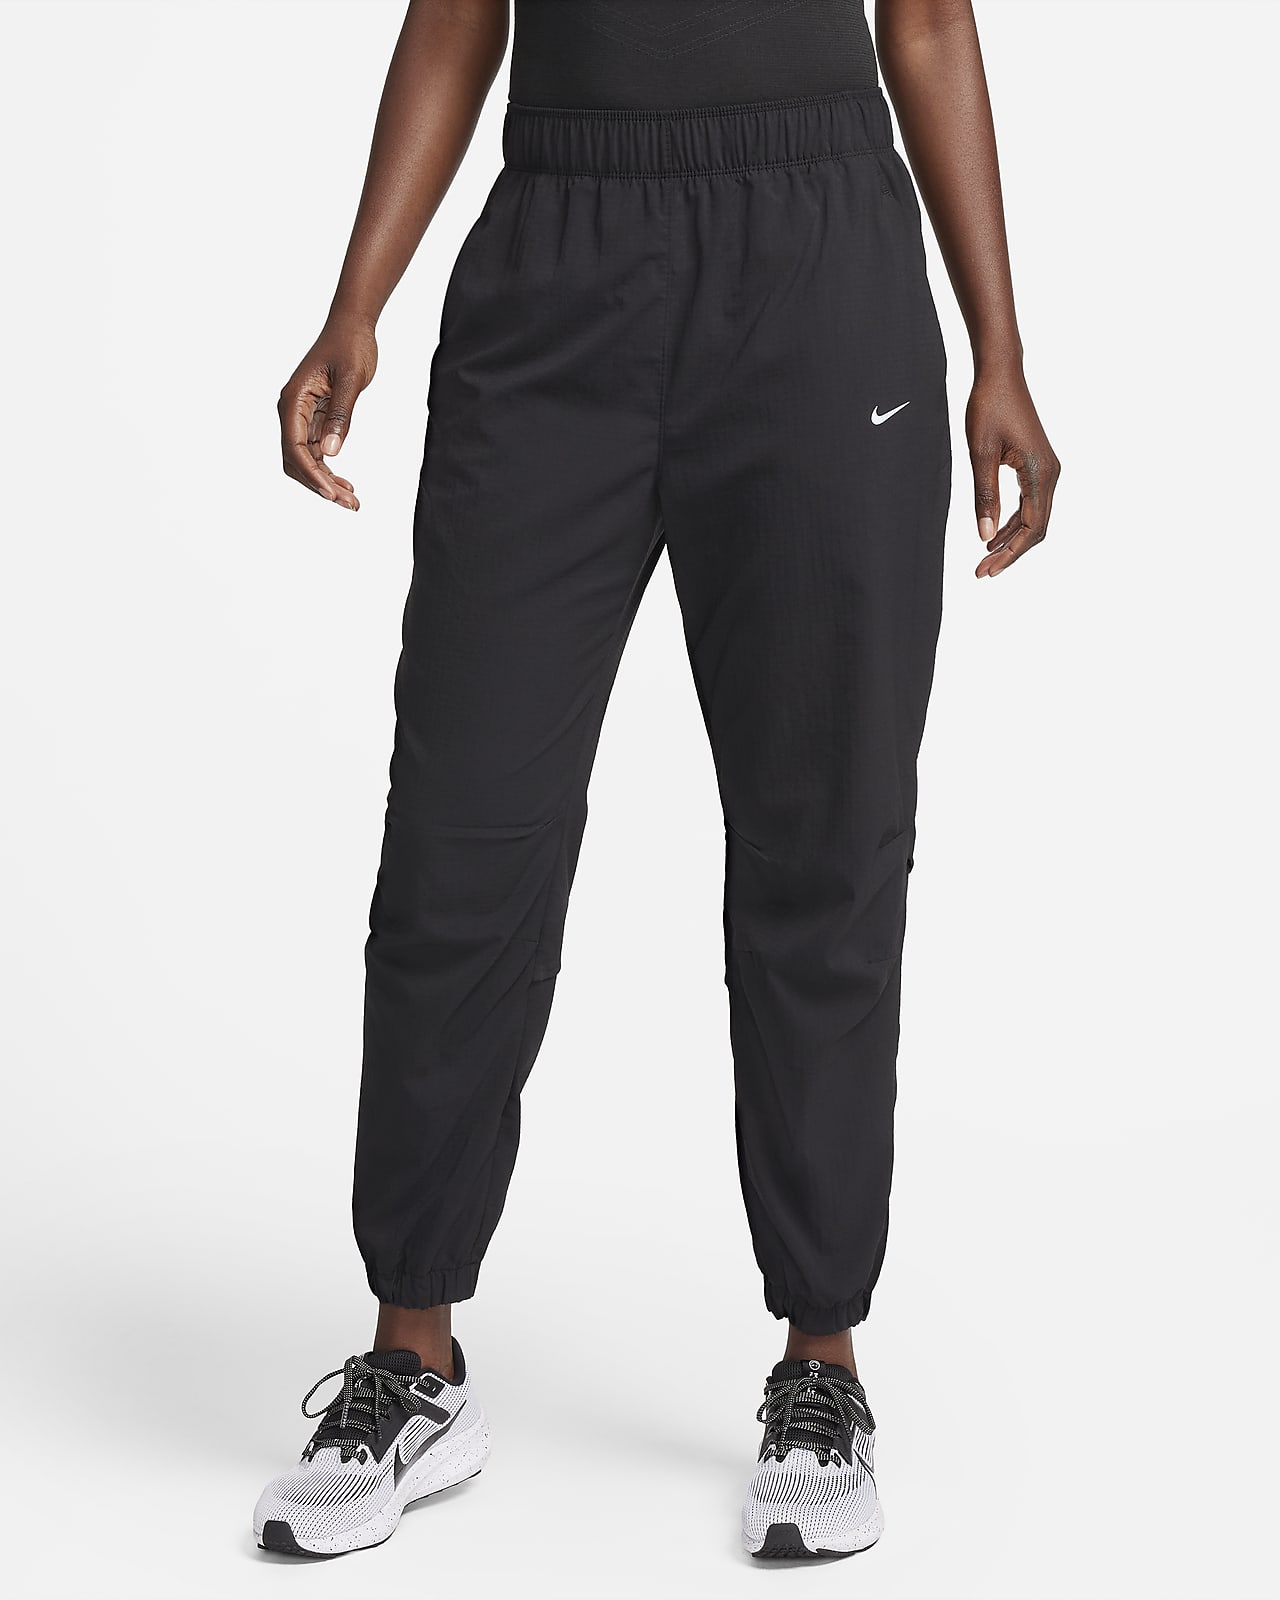 Pantalon de running d'échauffement 7/8 taille mi-haute Nike Dri-FIT Fast pour femme